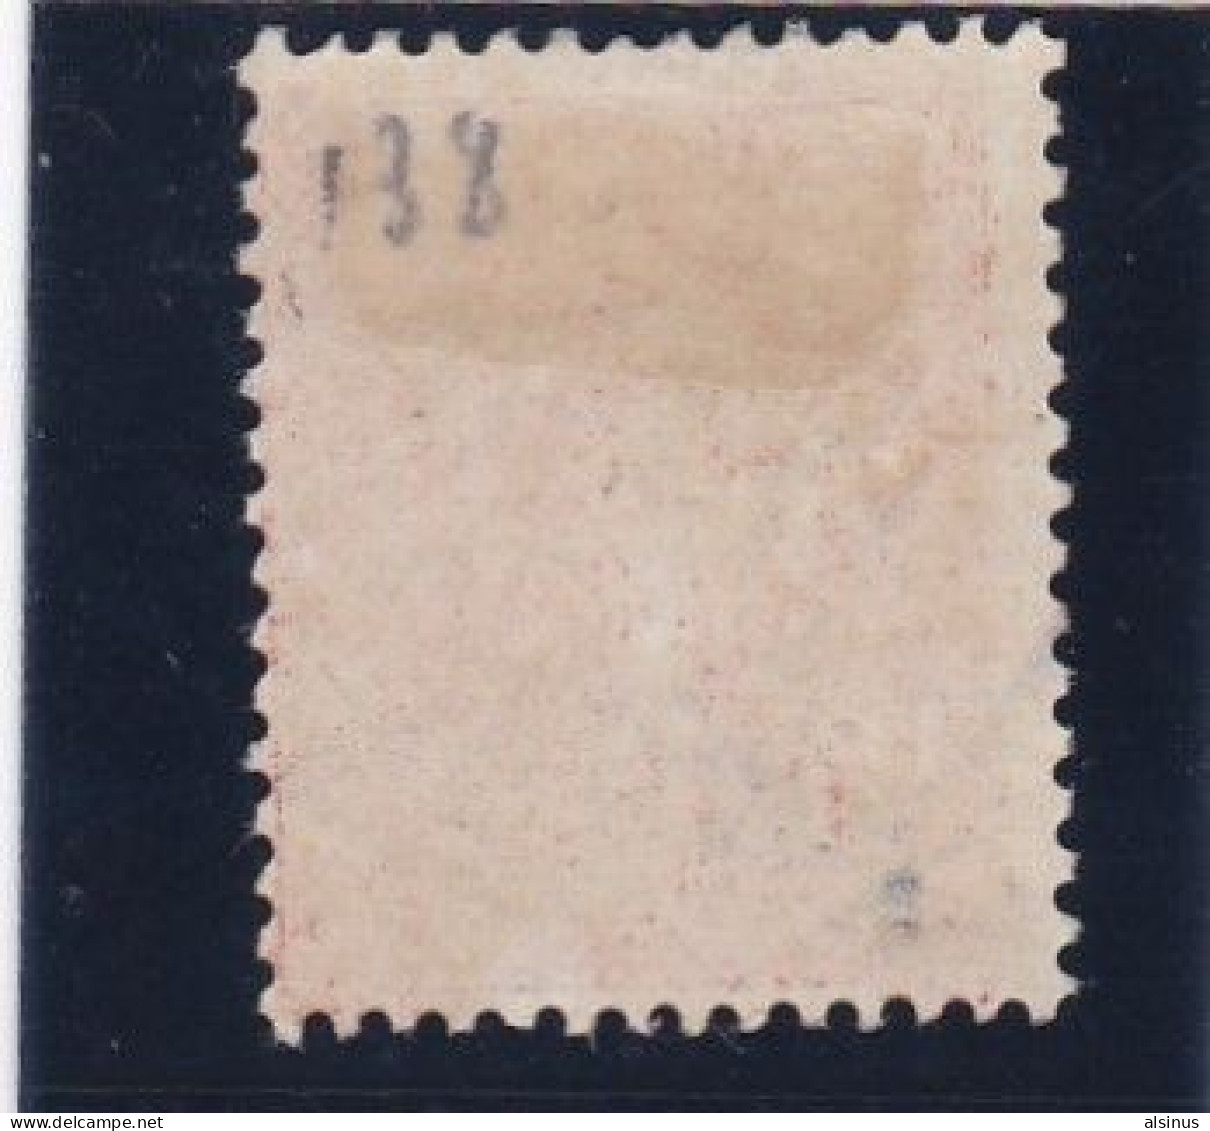 FRANCE - 1907 - TYPE SEMEUSE - N° 133c - 10 C ECARLATE - SIGNE - OBLITERE - 1903-60 Säerin, Untergrund Schraffiert